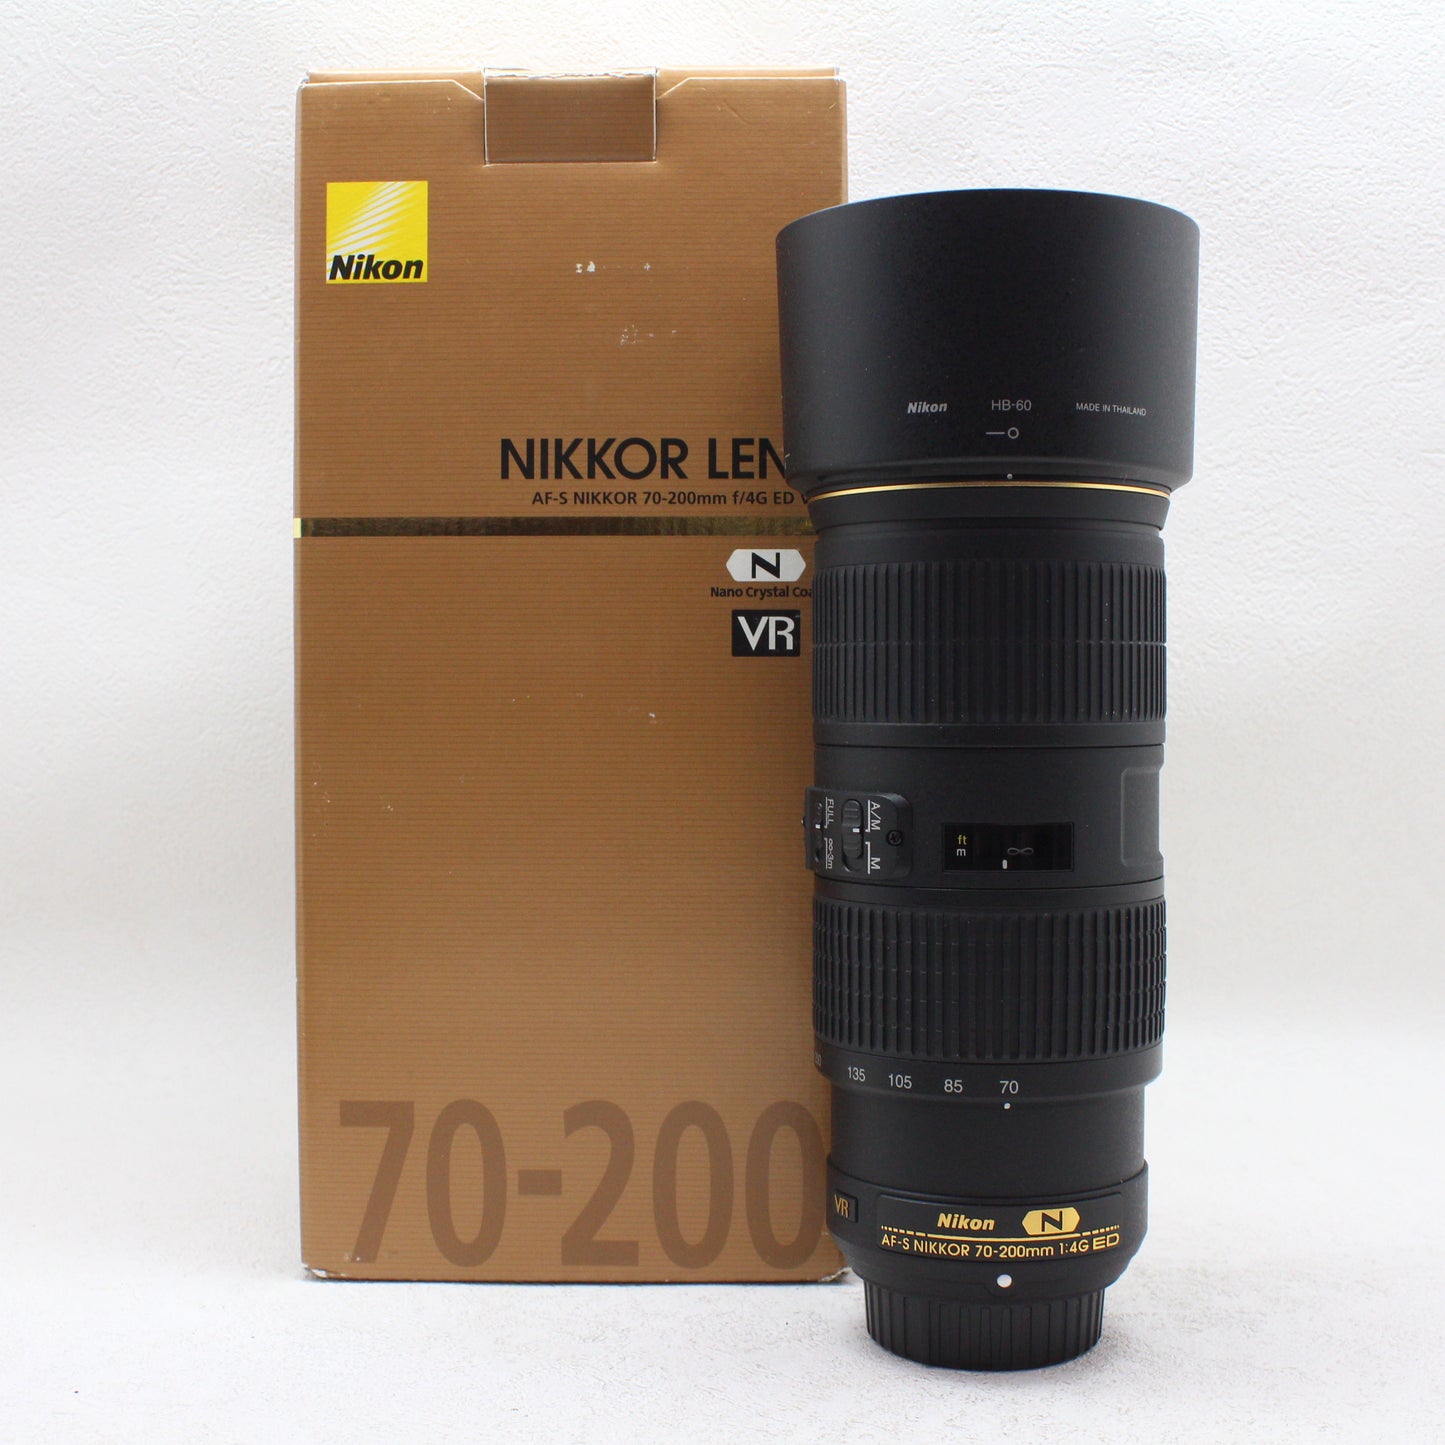 中古品 Nikon AF-S NIKKOR 70-200mm f/4G ED VR【4月28日(日) youtubeゲリラ生配信でご紹介】